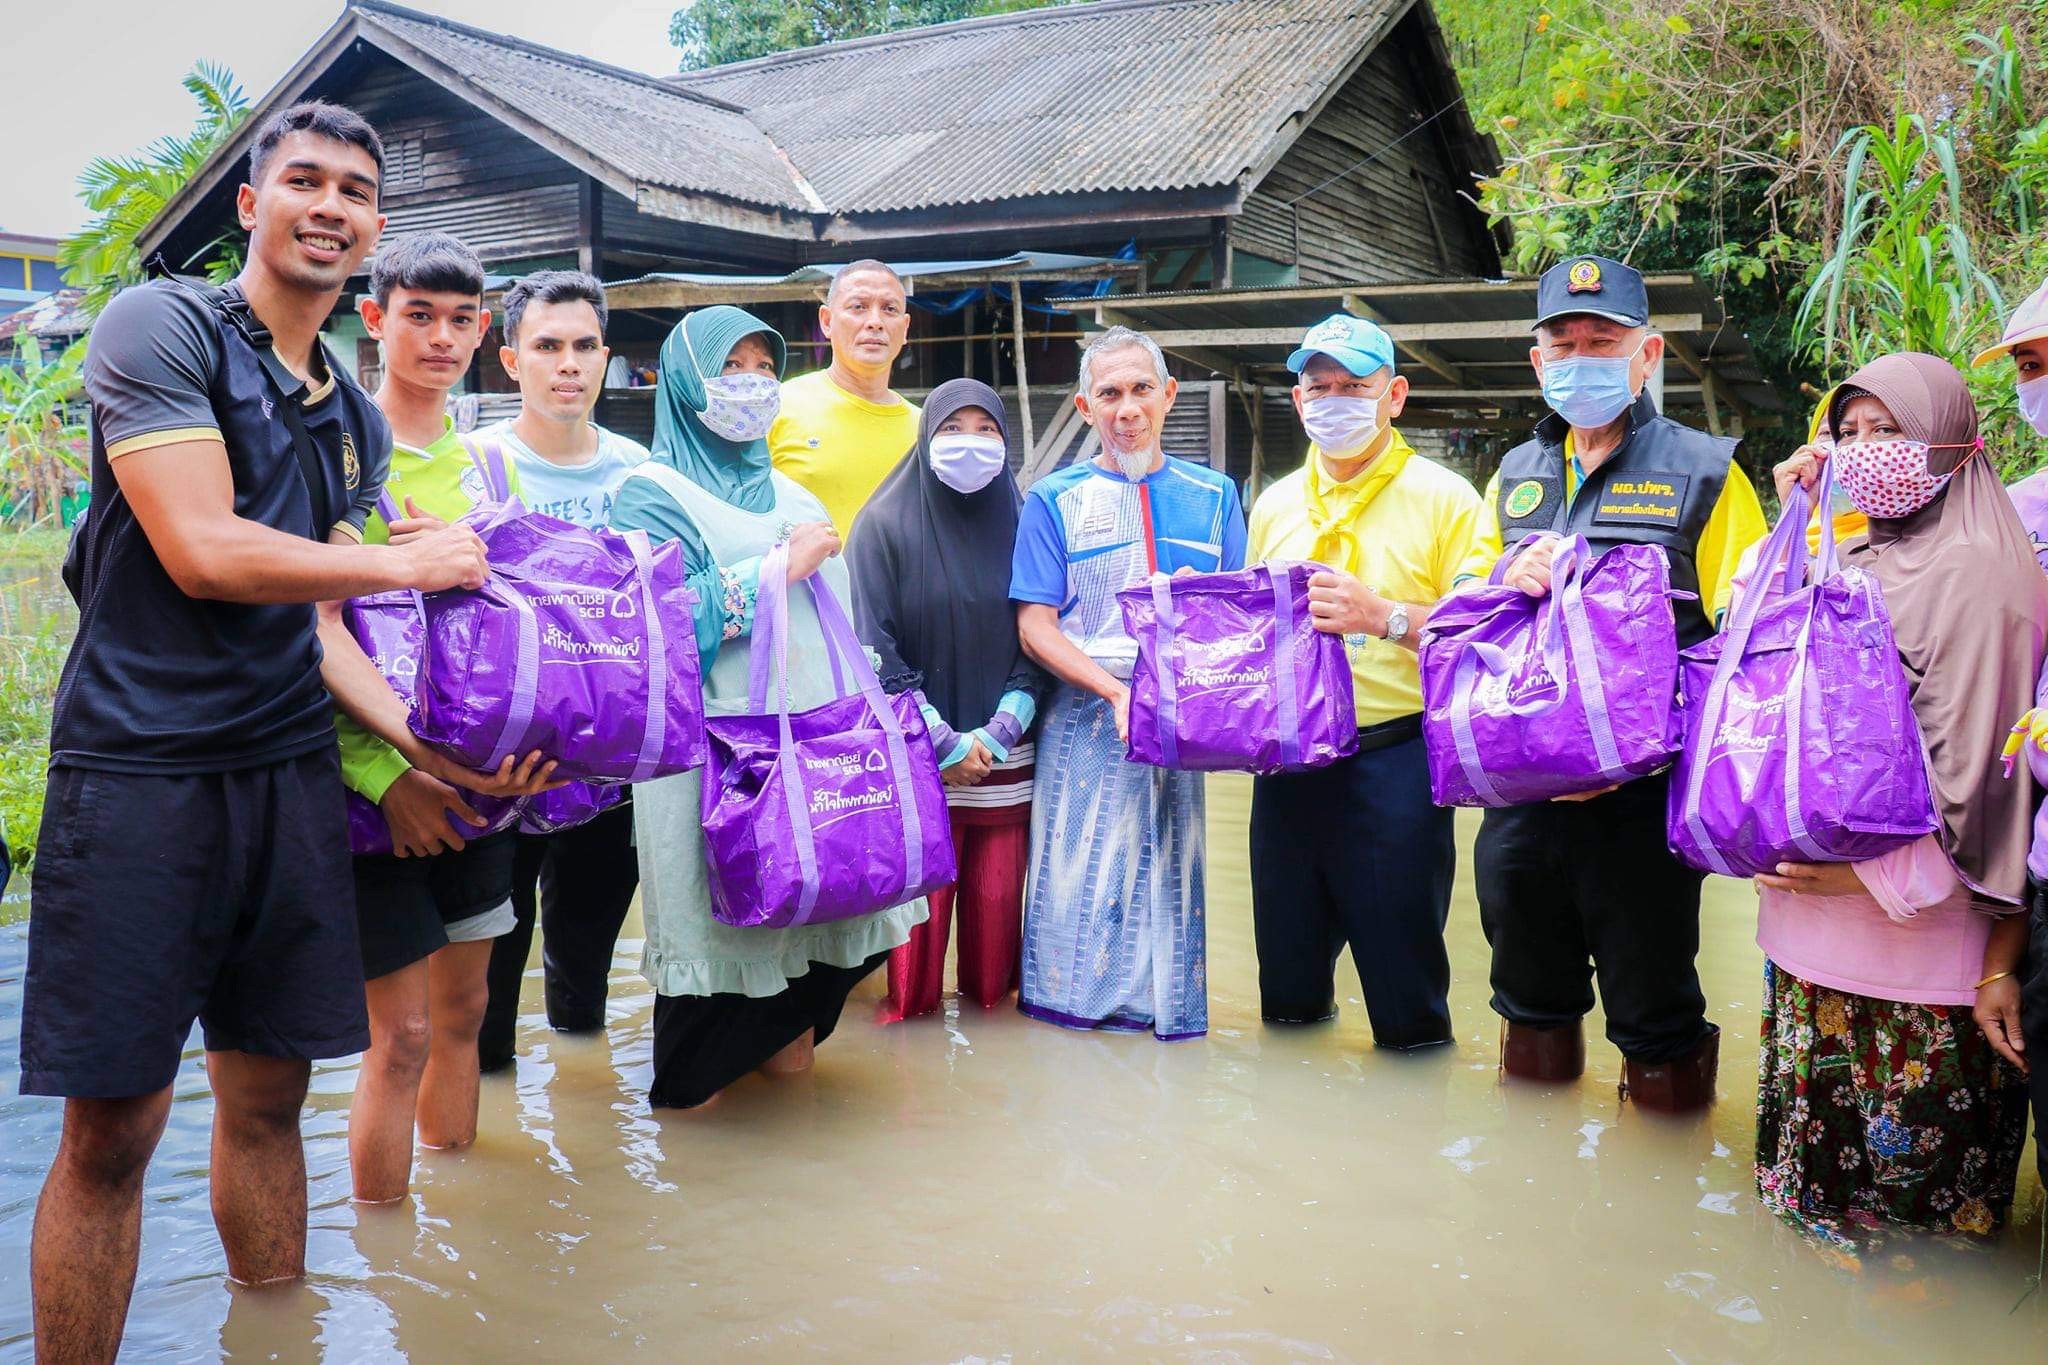 ธนาคารไทยพาณิชย์ร่วมกับกองทัพอากาศจัดส่งถุงยังชีพเป็นกำลังใจและบรรเทาทุกข์ผู้ประสบอุทกภัยในภาคใต้